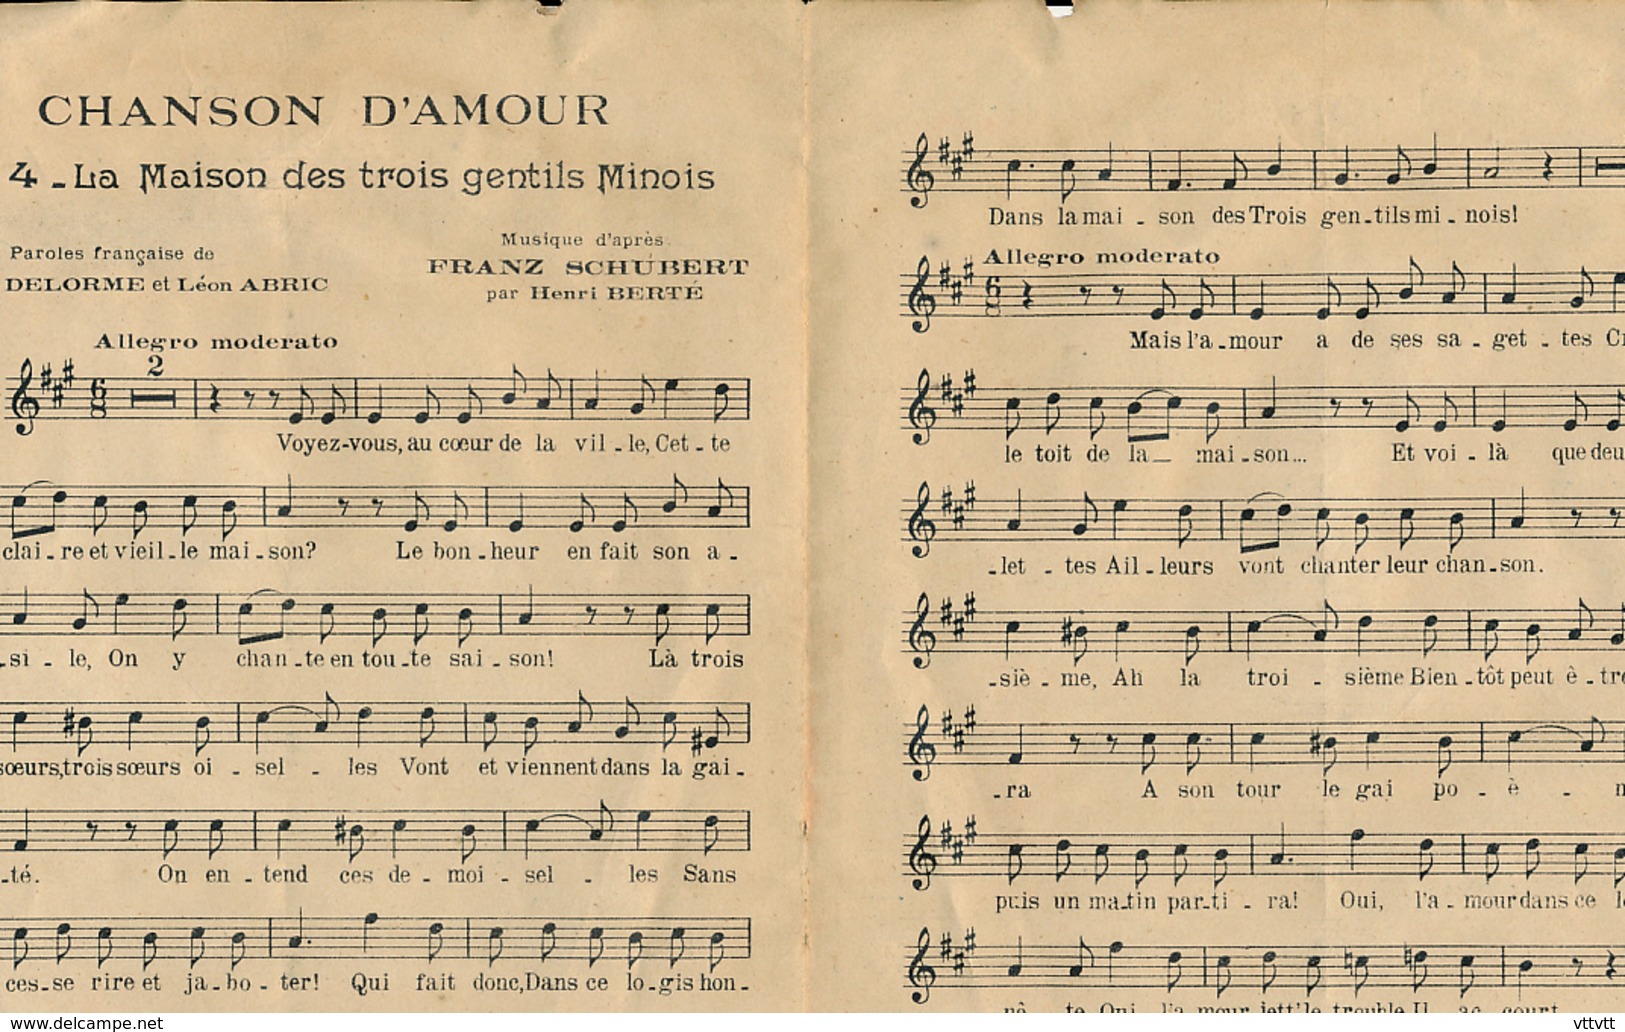 PARTITION (1916) : OPERETTE "CHANSON D'AMOUR", FRANZ SCHUBERT, "LA MAISON DES TROIS JEUNES FILLES", THEATRE MARIGNY... - Partitions Musicales Anciennes